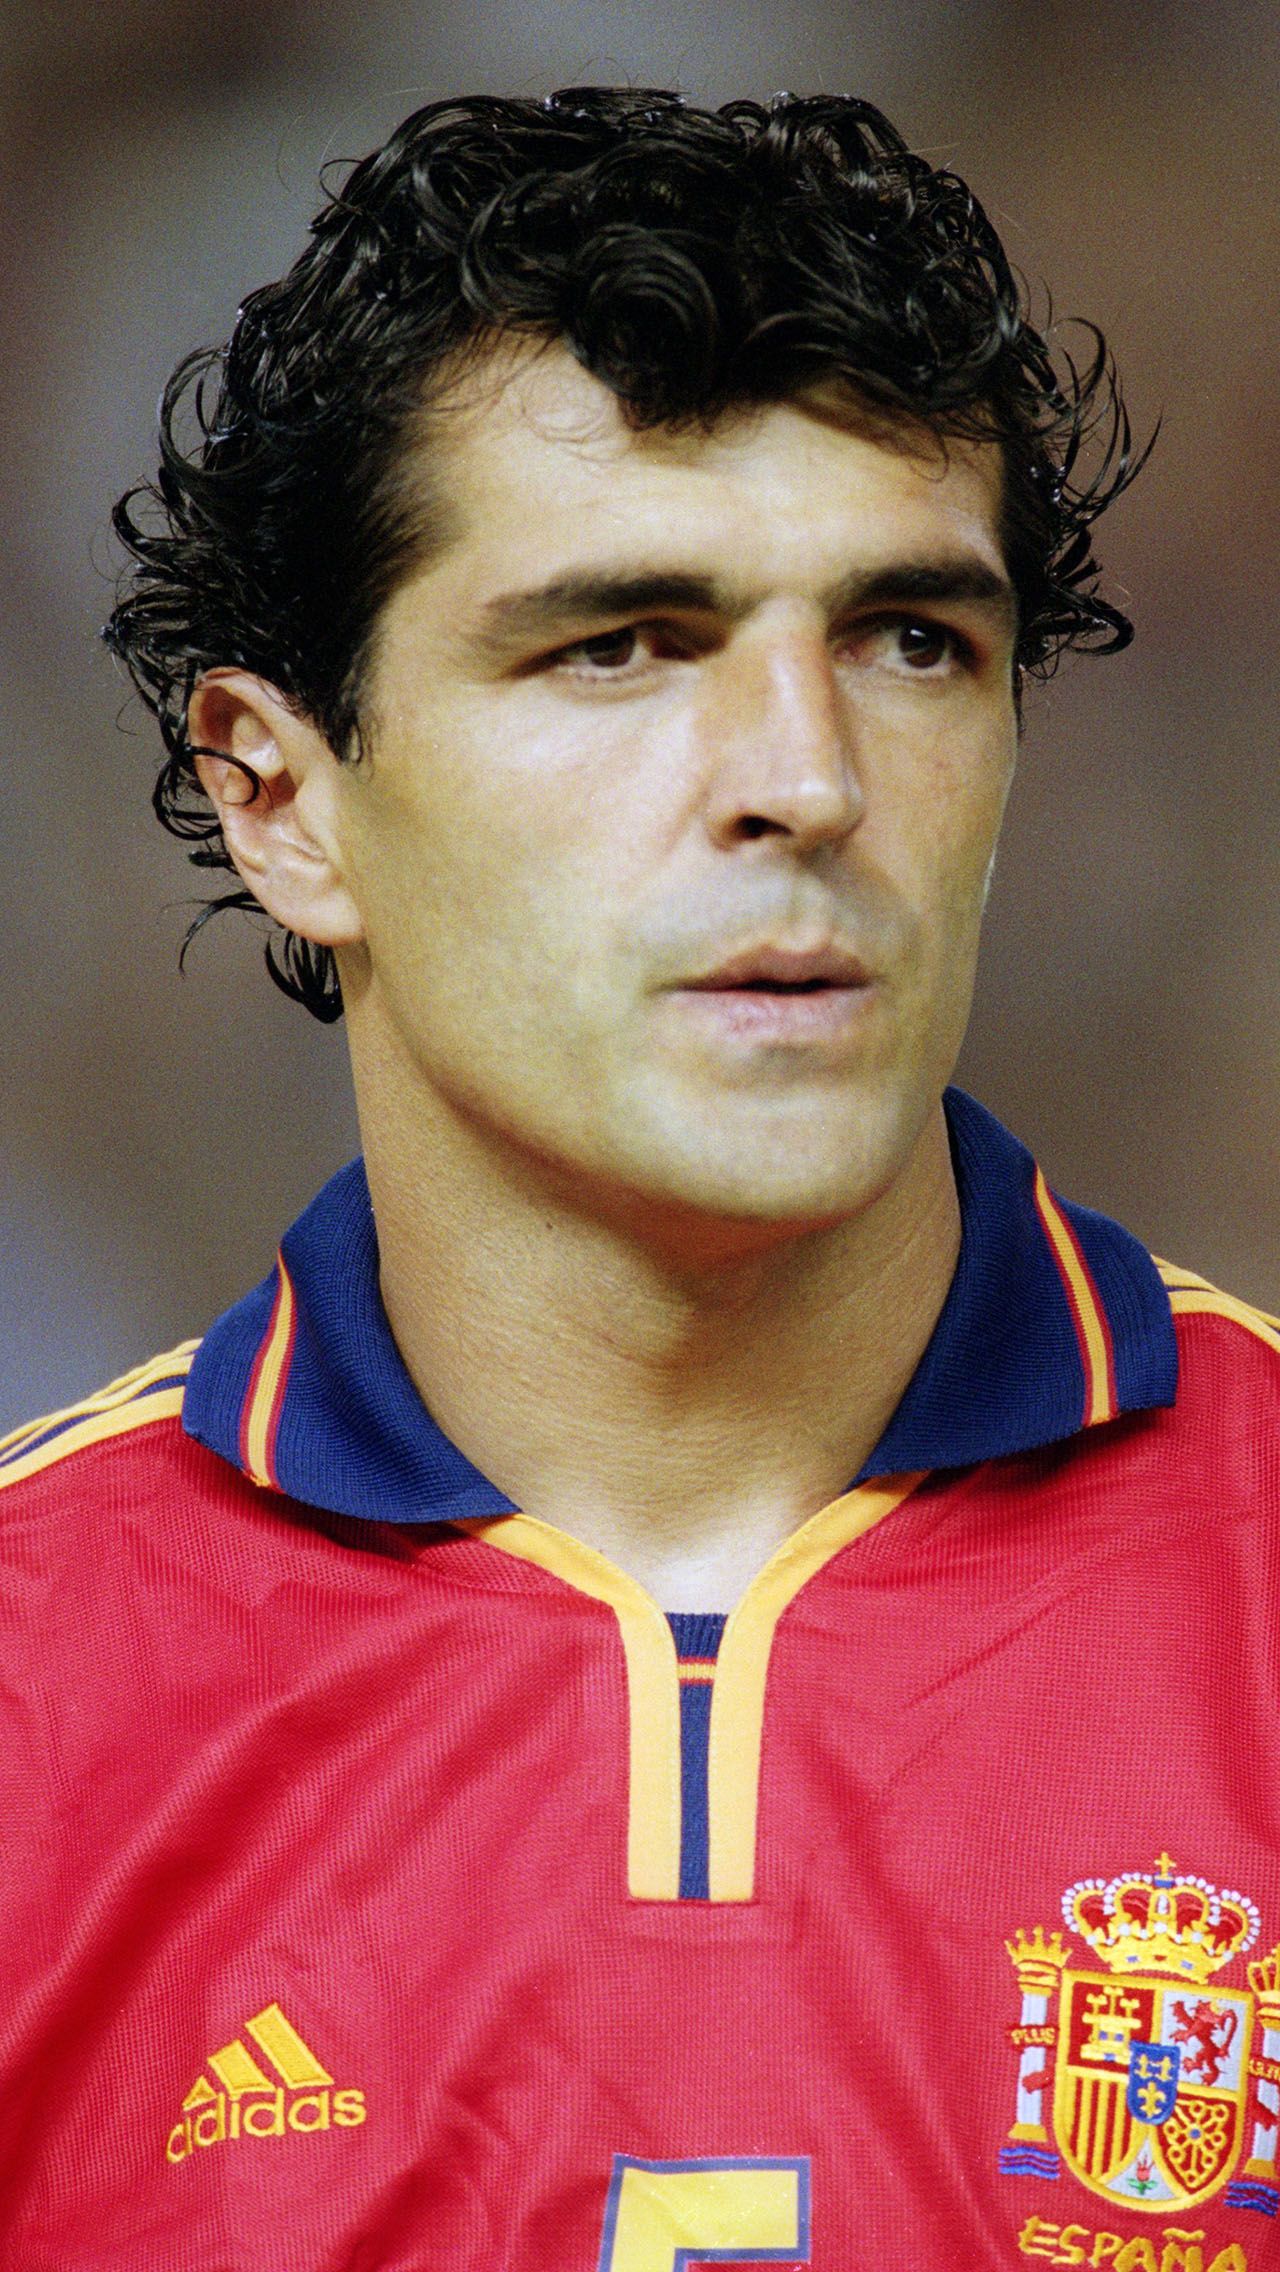 Дядя Рафы — легендарный защитник «Барселоны» Мигель Анхель Надаль, который пять раз становился чемпионом Испании. С 2010 по 2011 год он ассистировал главному тренеру «Мальорки».